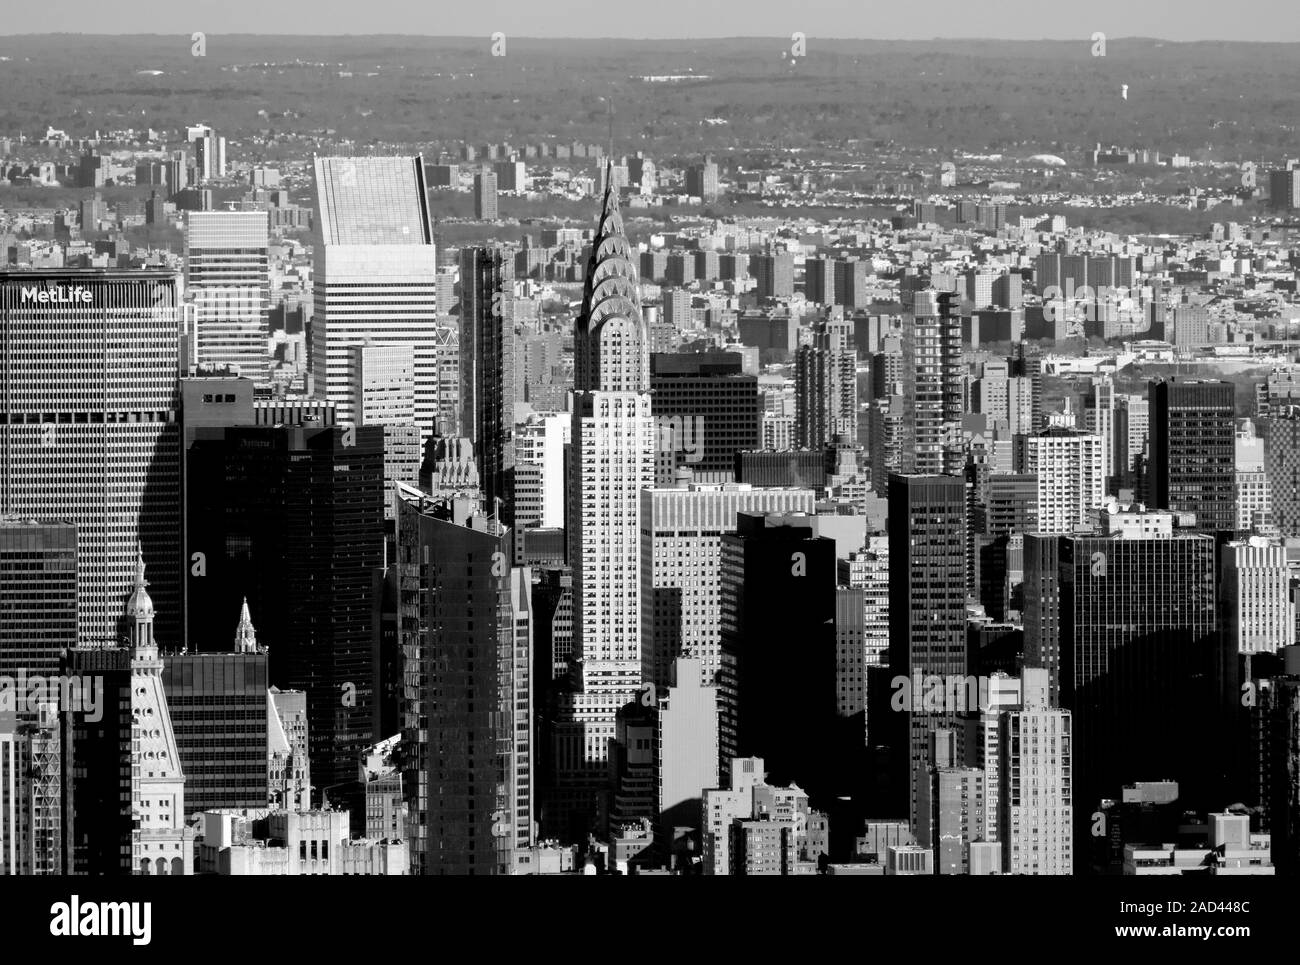 La magnifique île de Manhattan skyline y compris l'Empire State Building et le Chrysler Building, New York City, États-Unis d'Amérique Banque D'Images